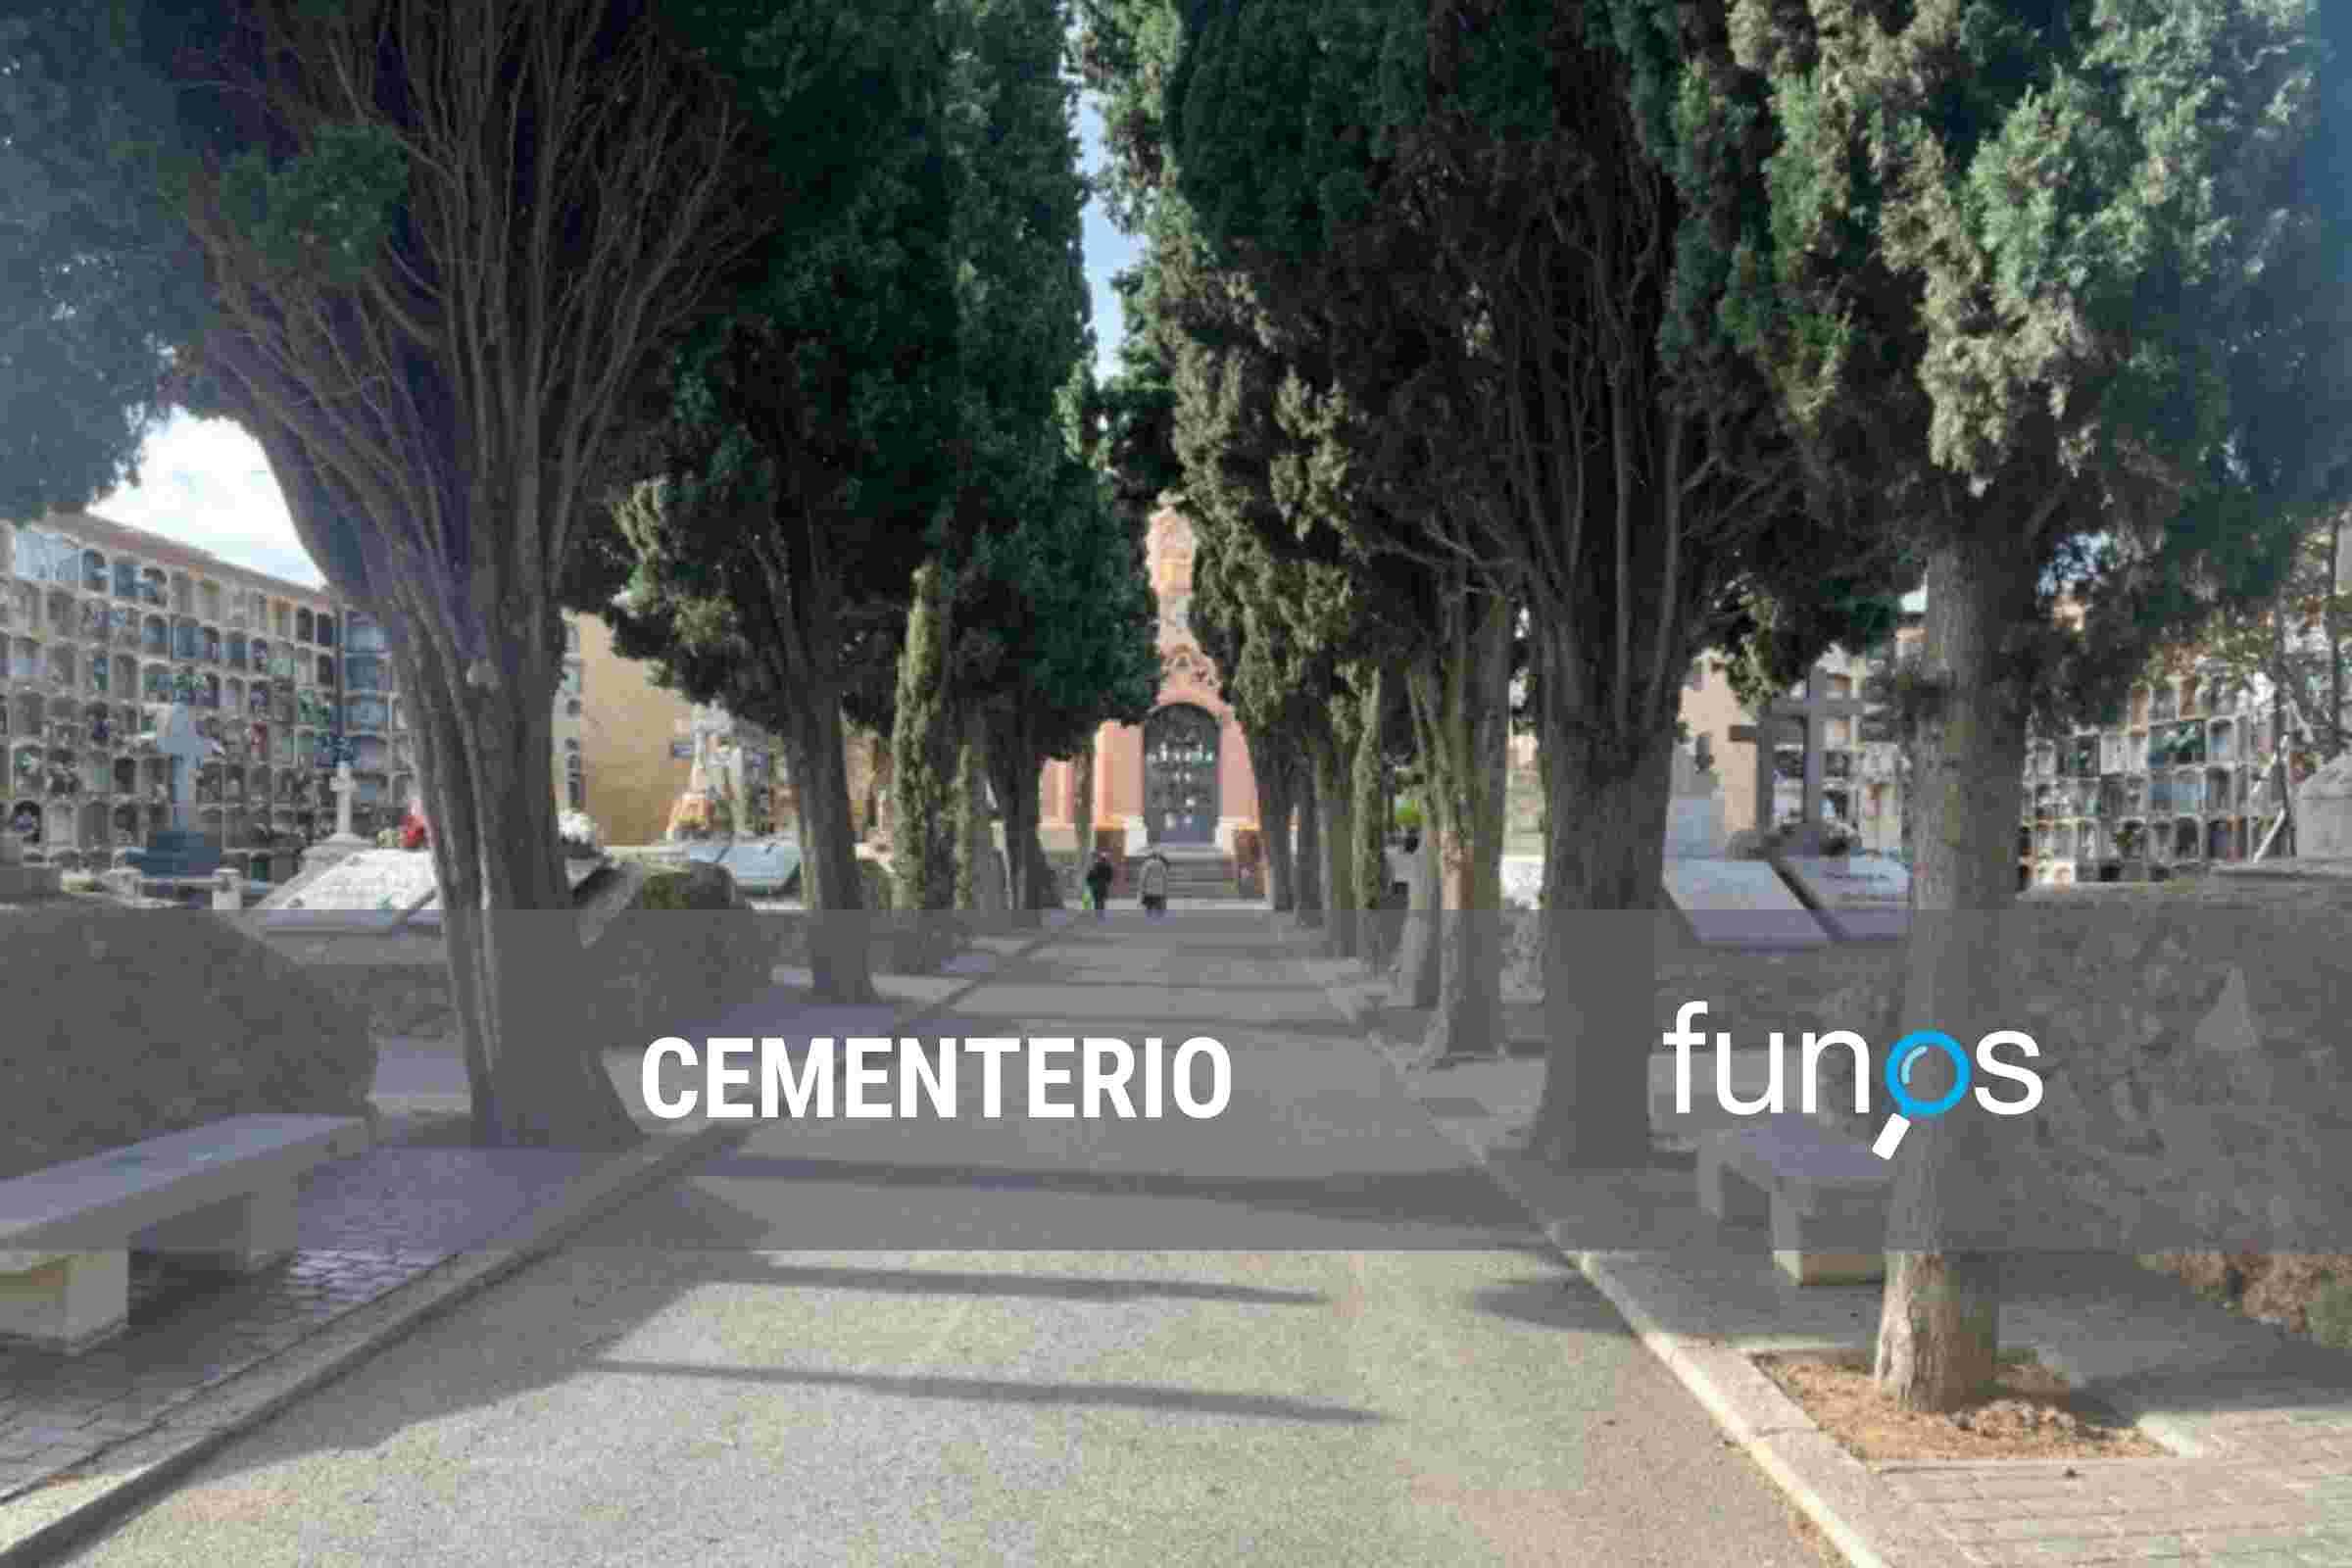 Post sobre ¿Qué es un cementerio? en Funos